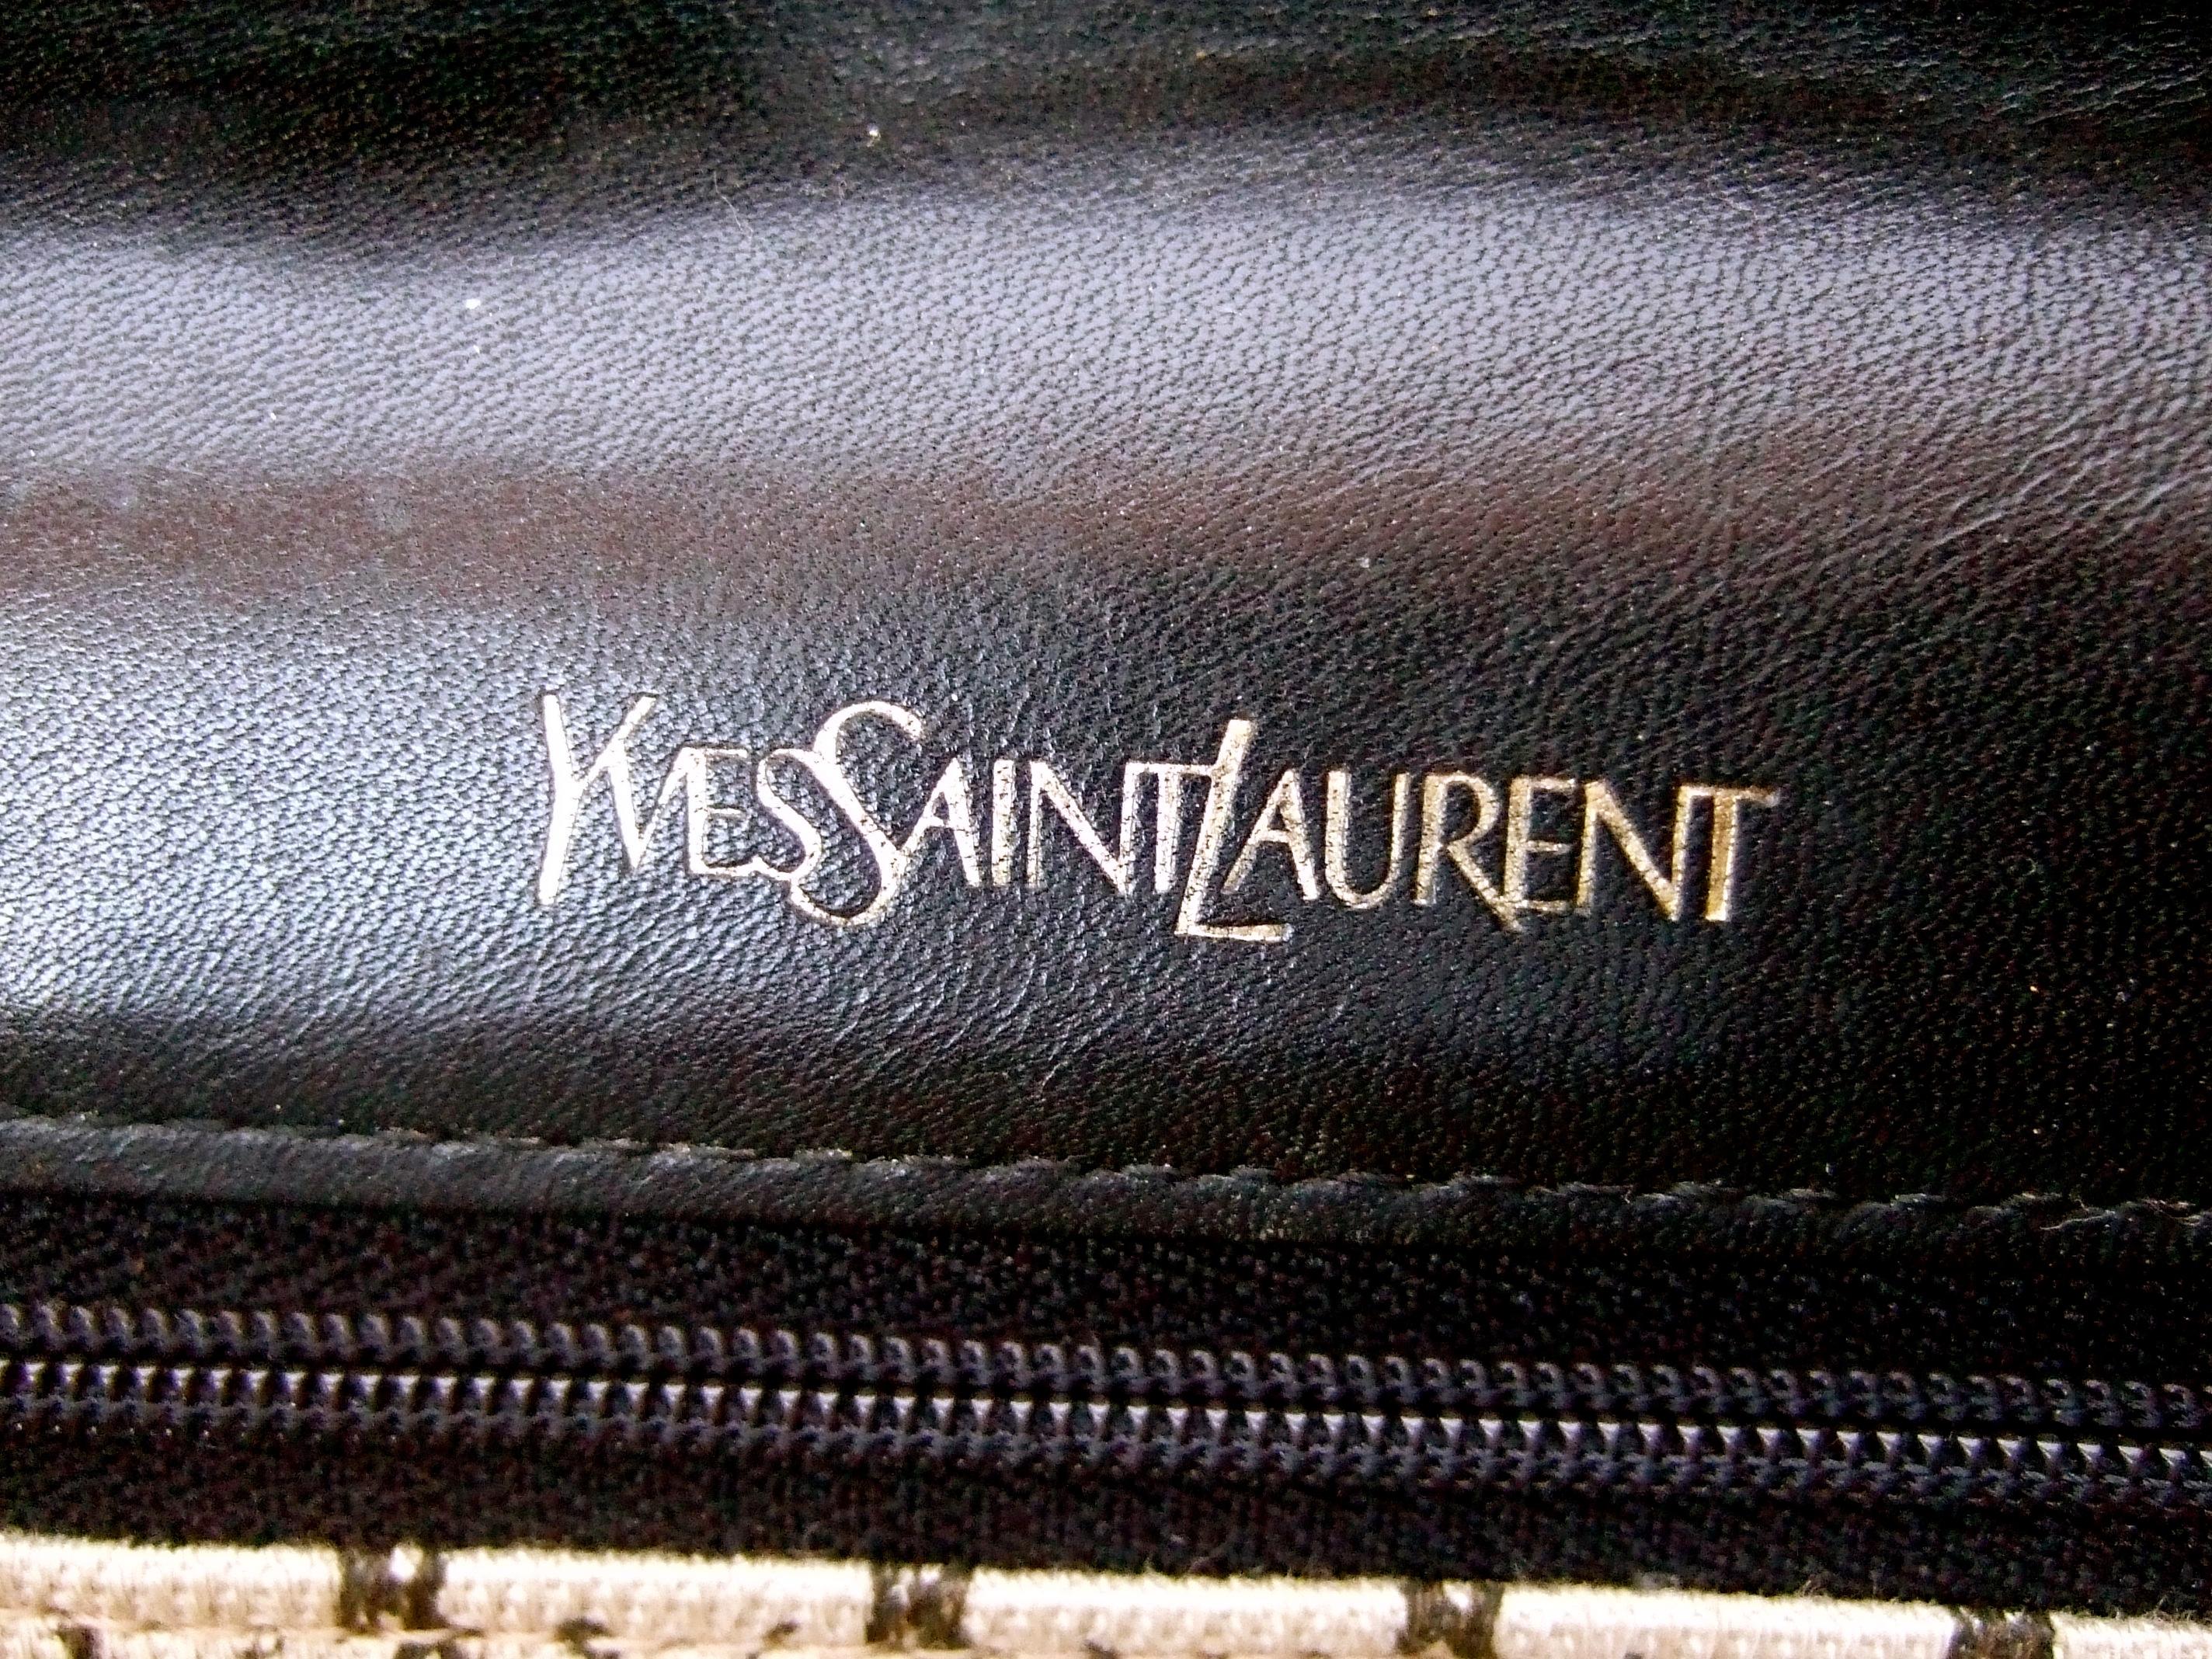 Yves Saint Laurent Chic Black Leather Versatile Clutch - Shoulder Bag c 1980s 11